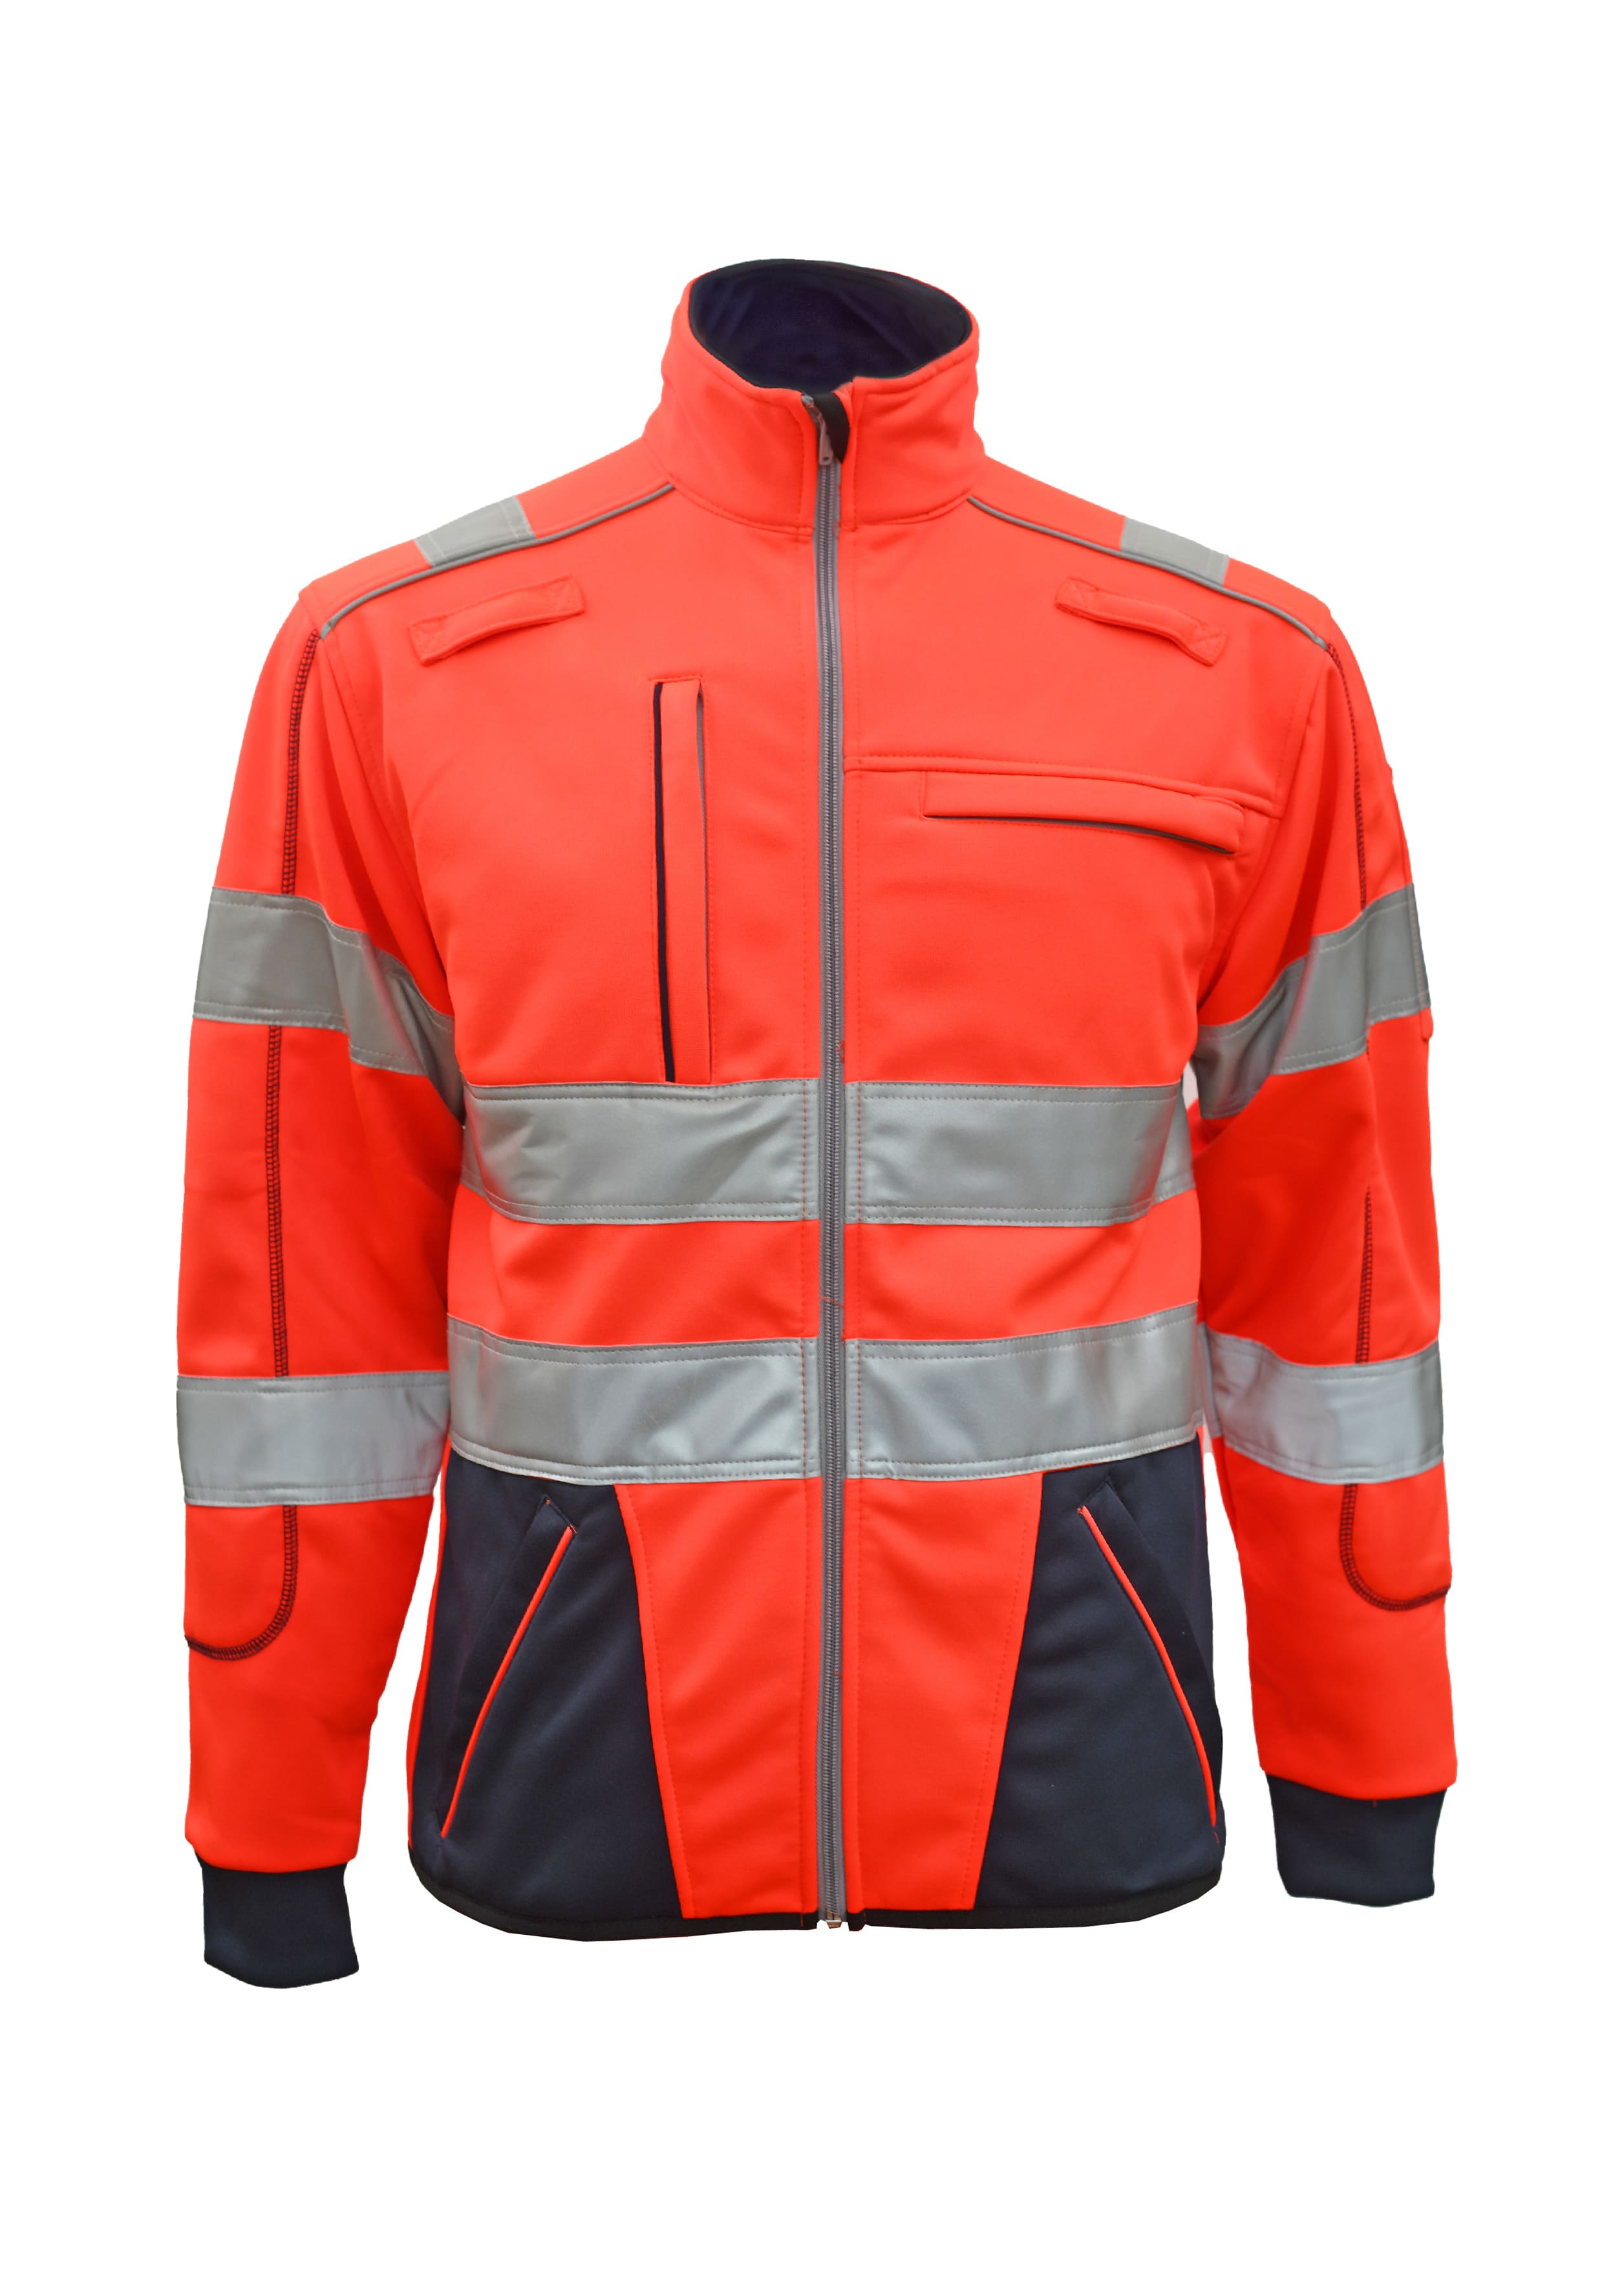 Rescuewear Sweatjacke 33359 Dynamic HiVis Klasse 3 Marineblau / Neon Rot